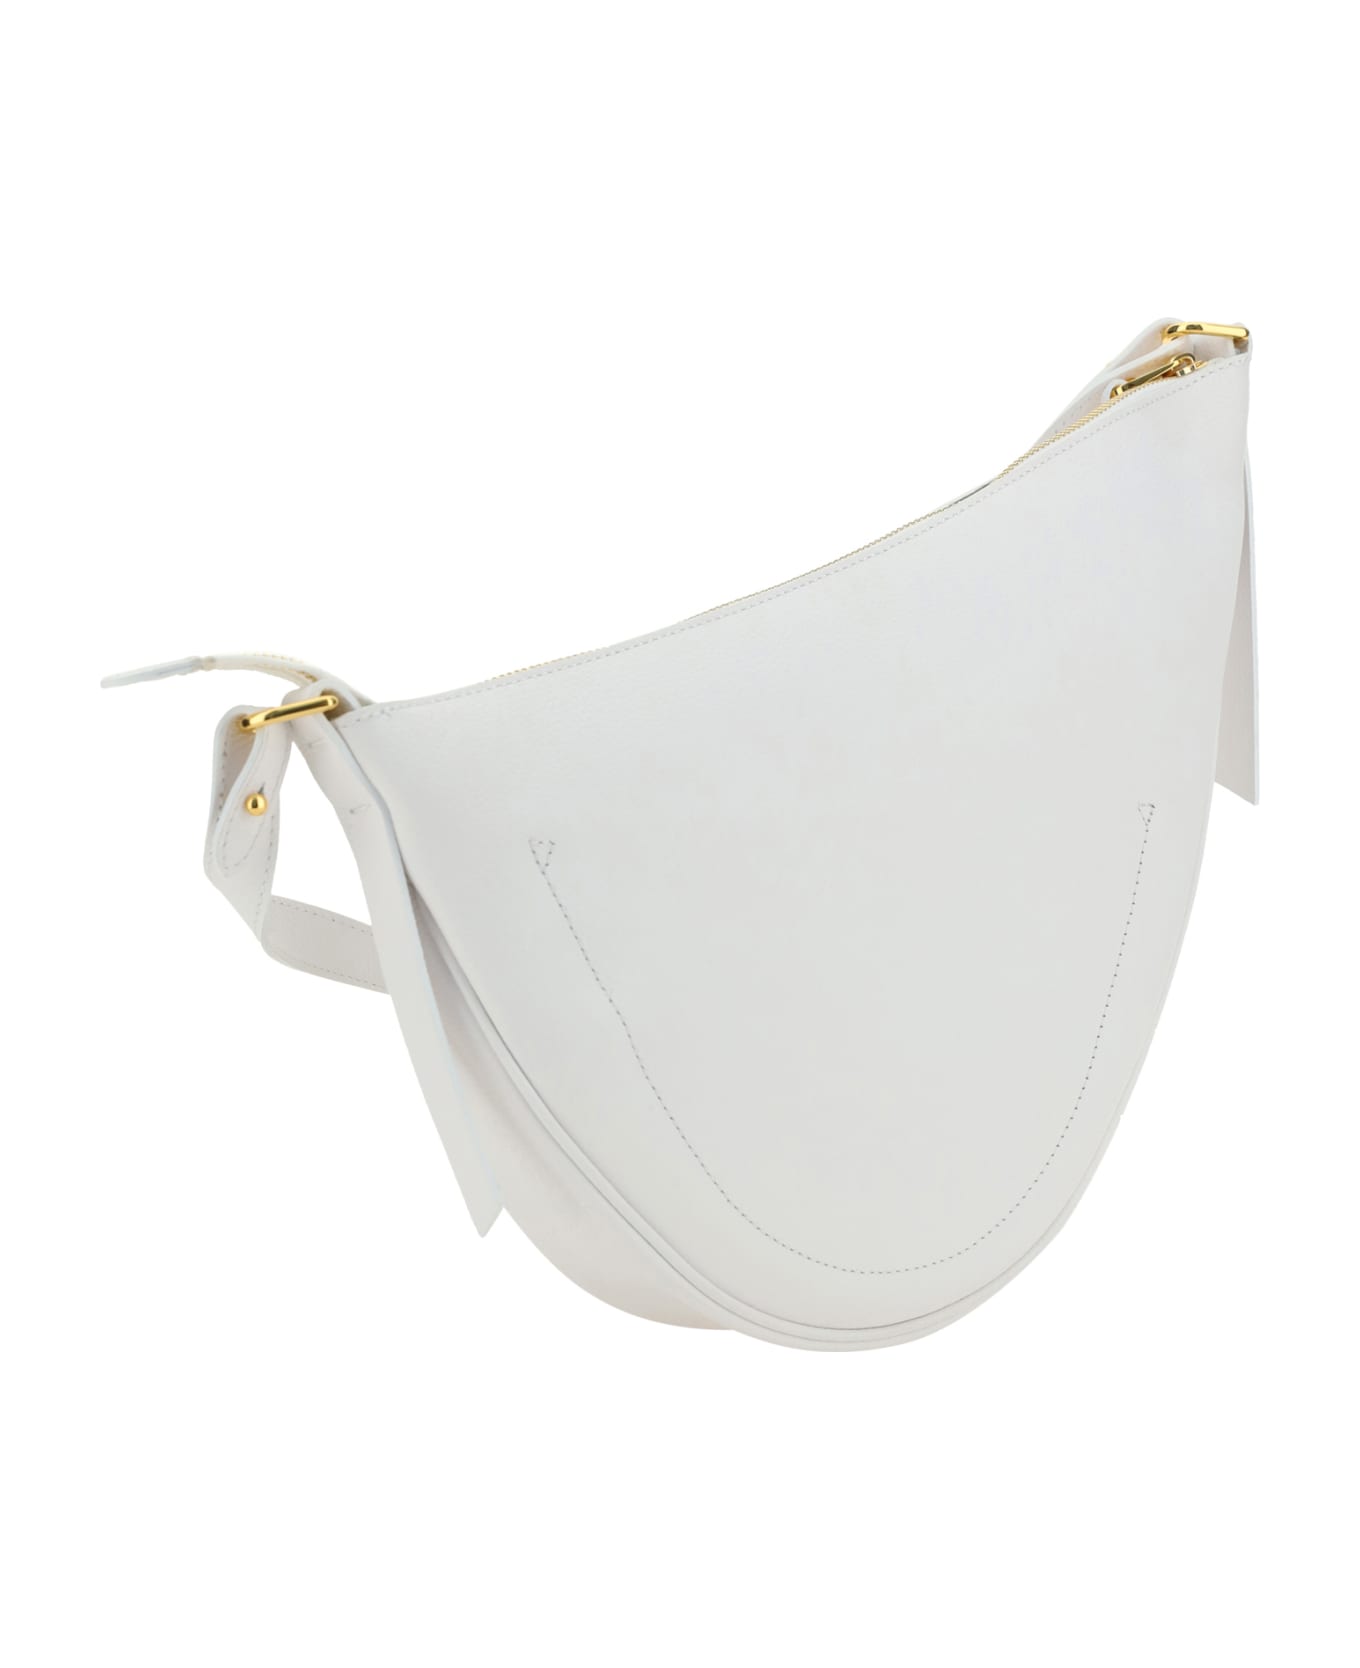 Coccinelle Snuggie Shoulder Bag - Bril.wh/cela.gr ショルダーバッグ